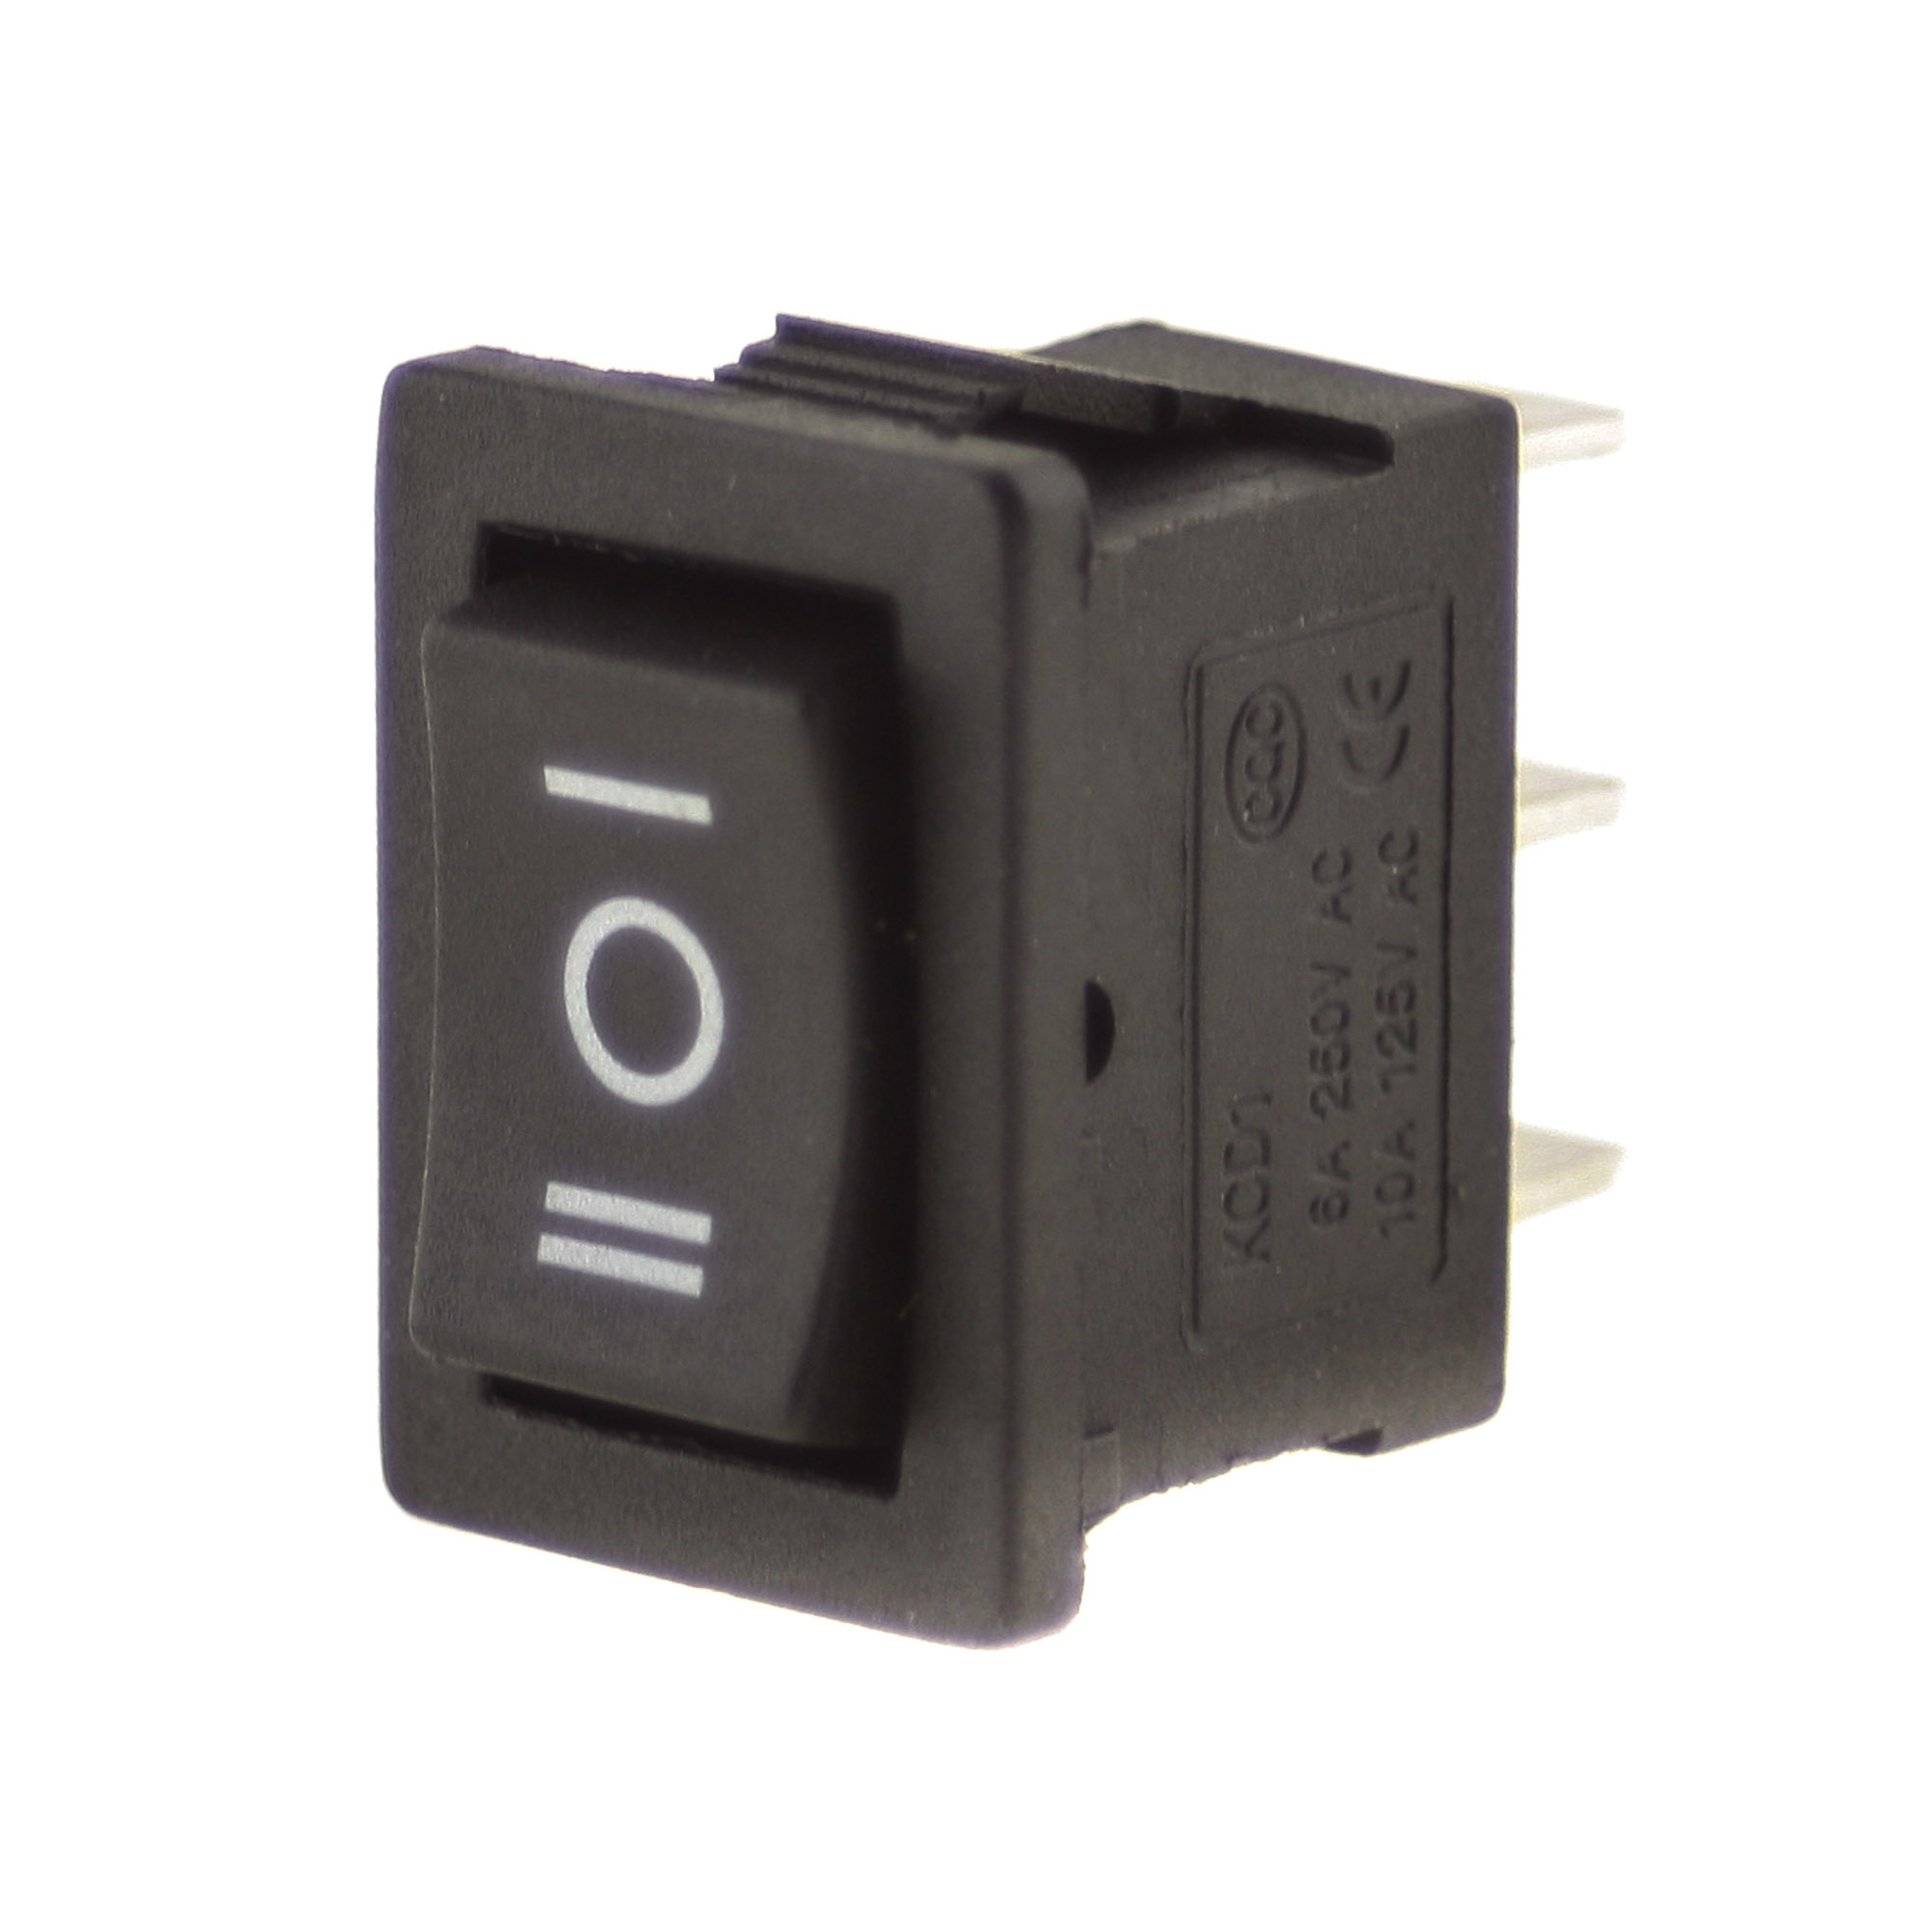 Switch I-0-II 250V 6A, 21x15mm